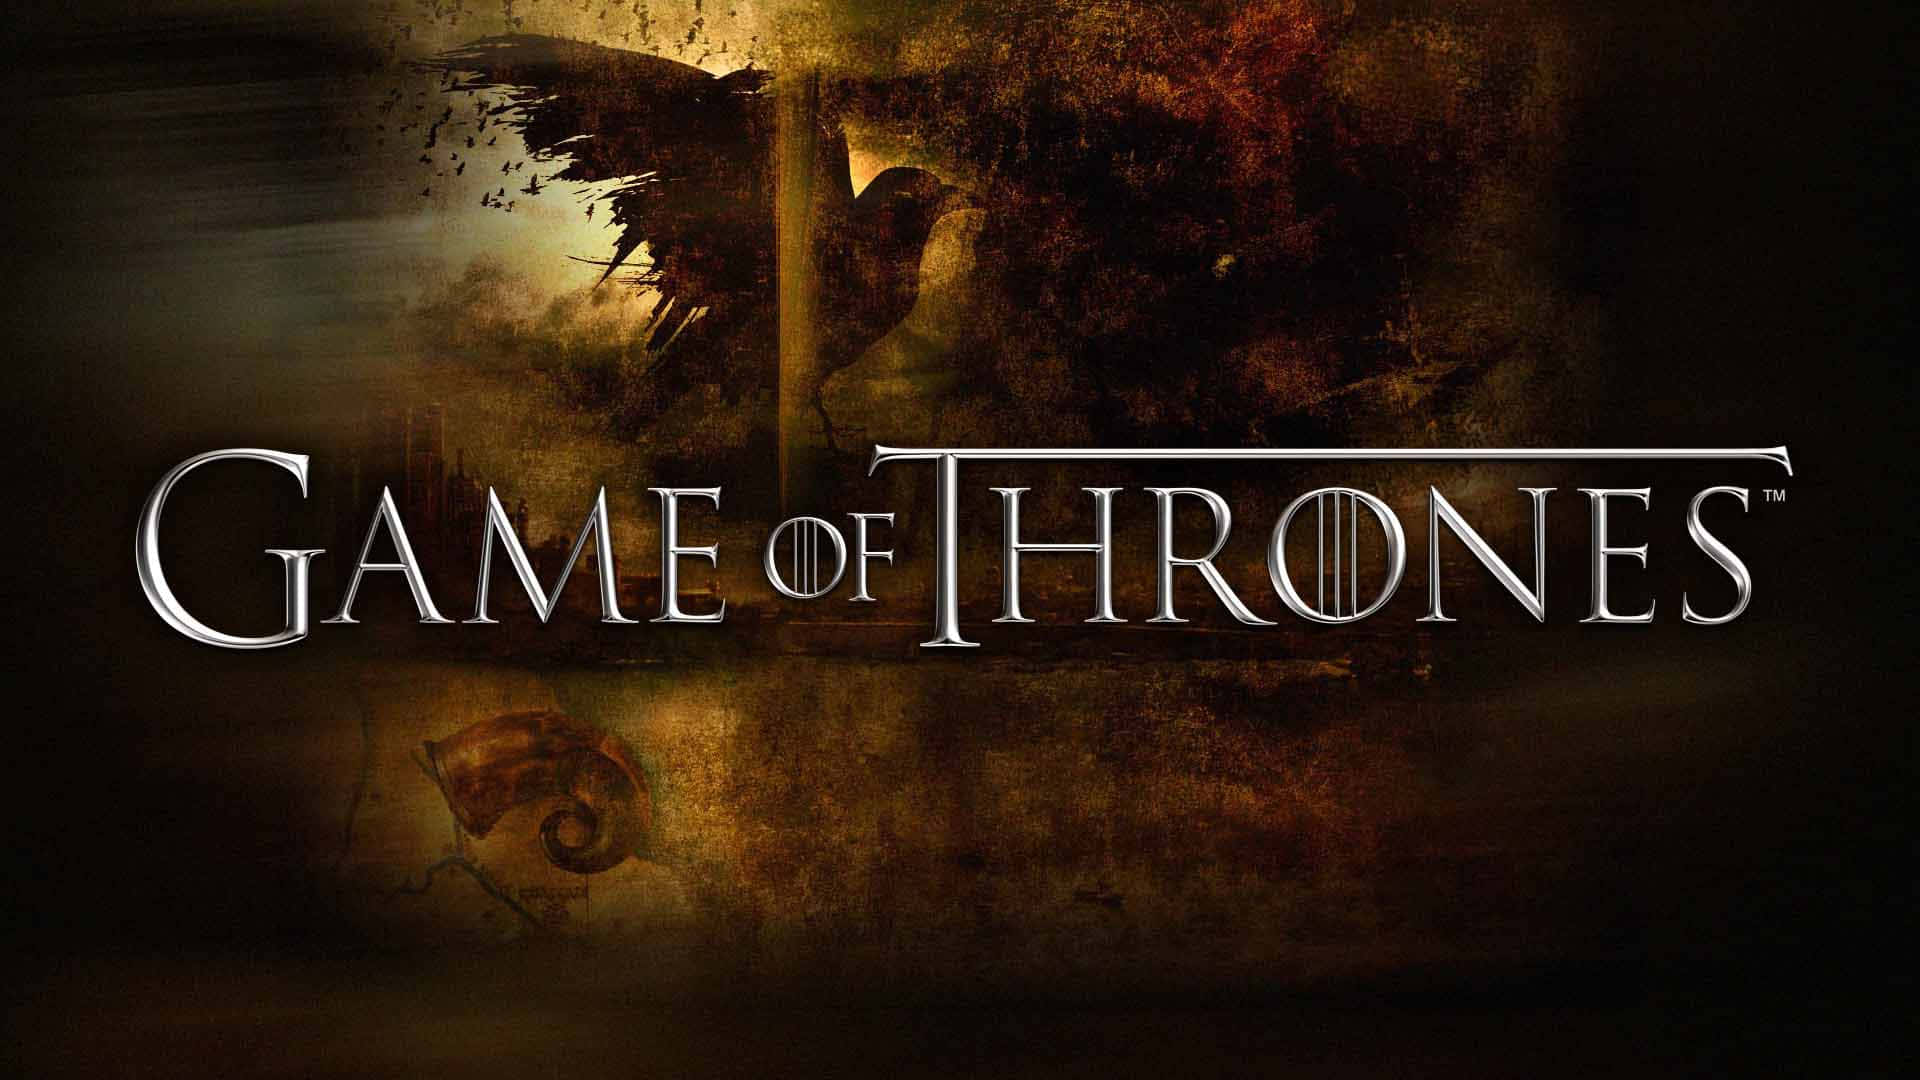 Gameof Thrones Stagione 7 - Serie Televisiva Sfondo